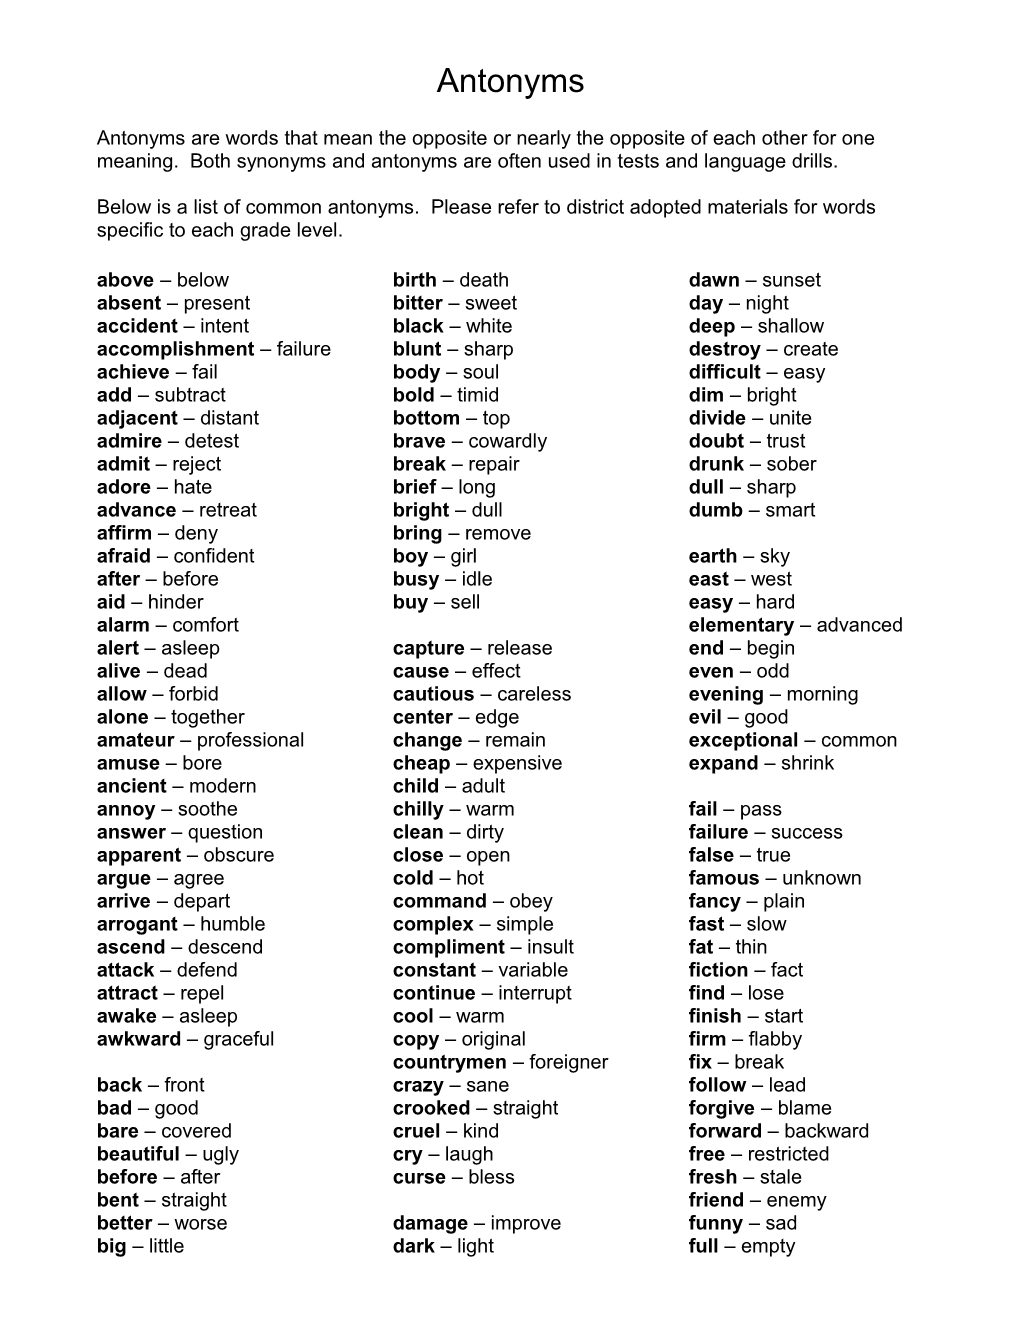 List of Common Antonyms